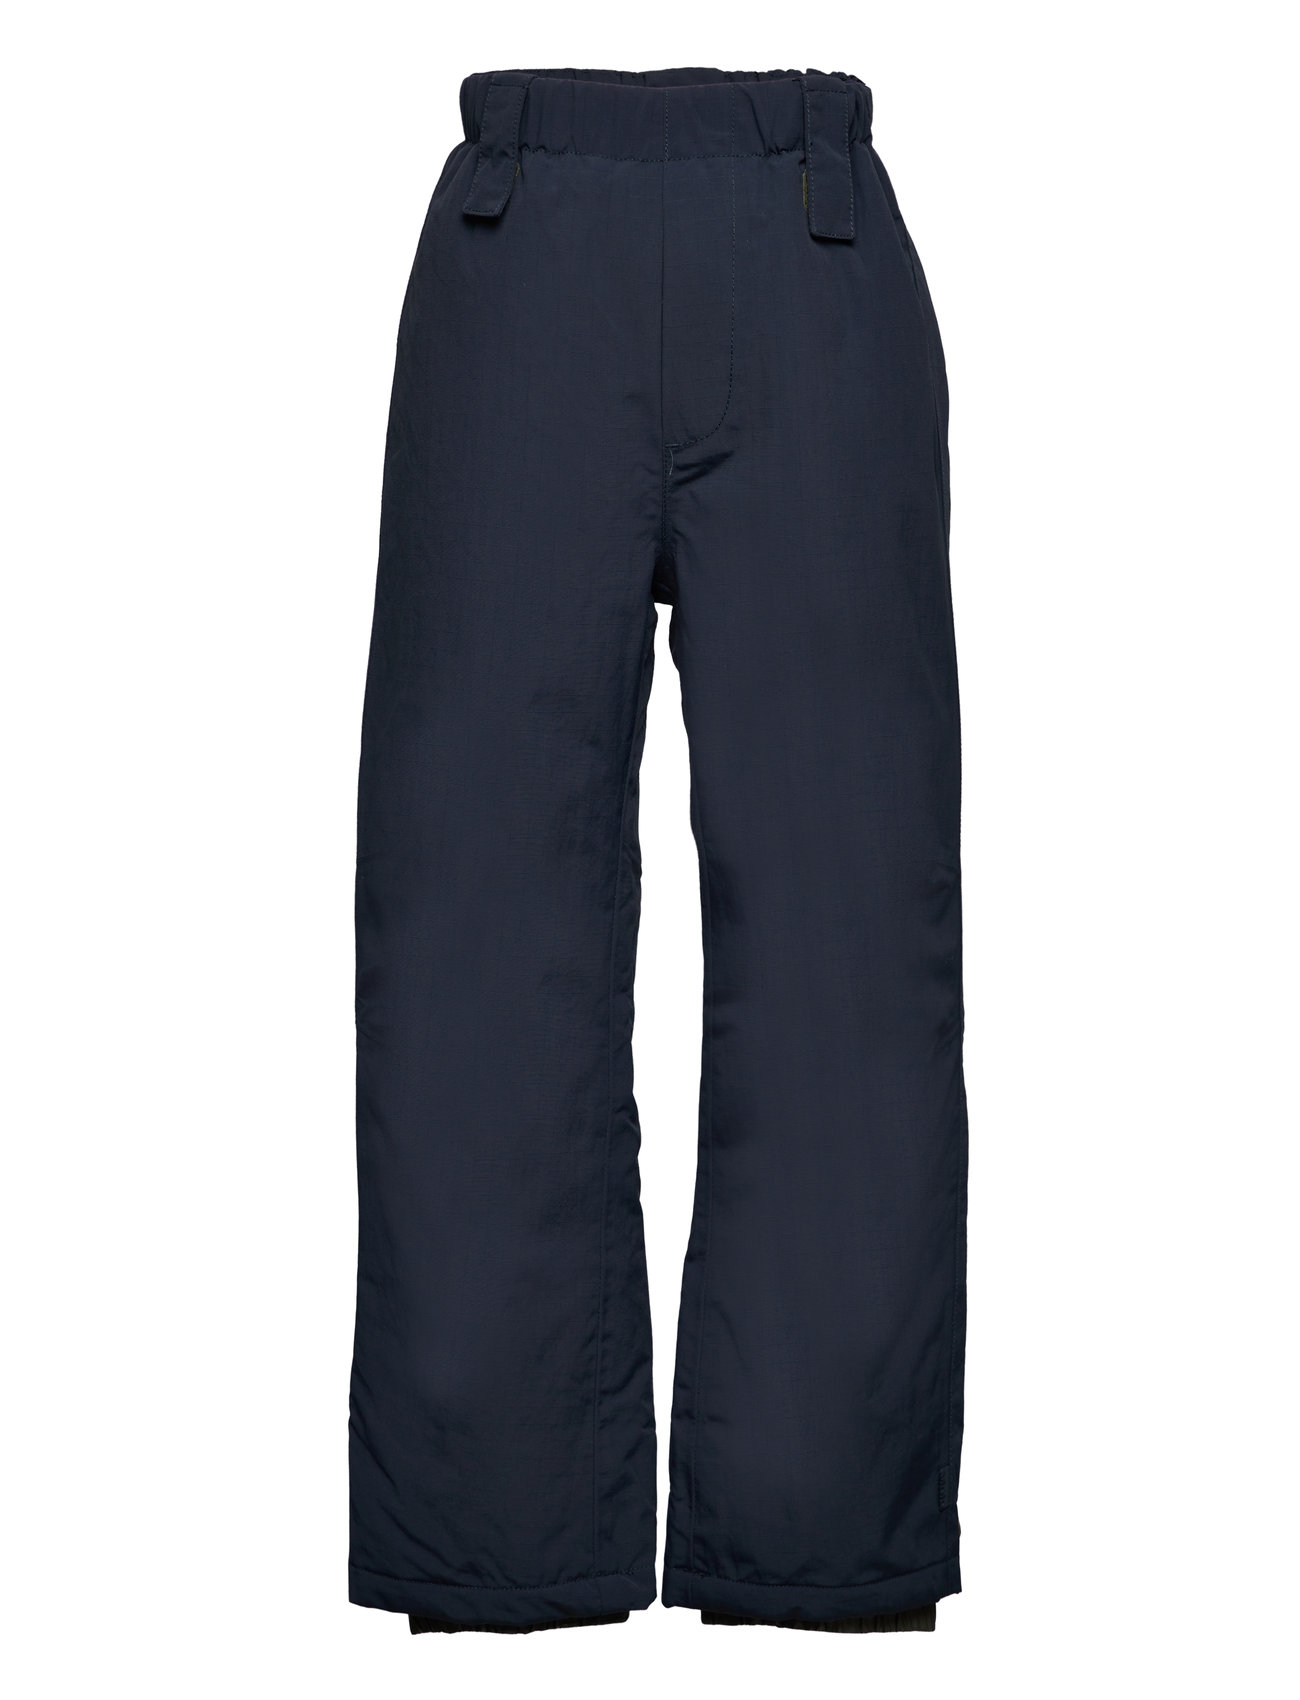 Paxton Outerwear Snow-ski Clothing Snow-ski Pants Navy Molo